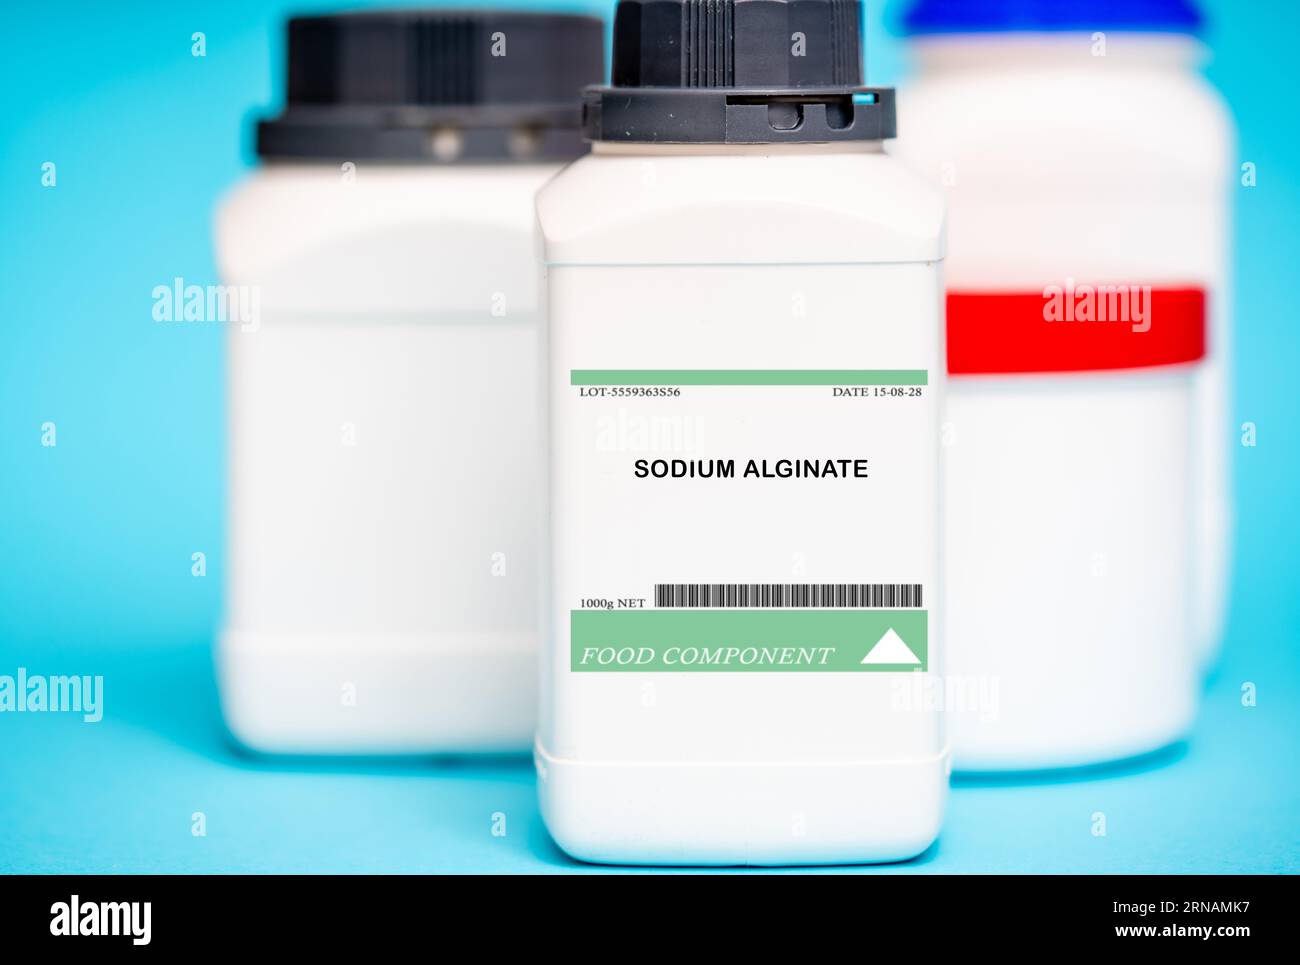 El alginato de sodio es un espesante y estabilizador comúnmente